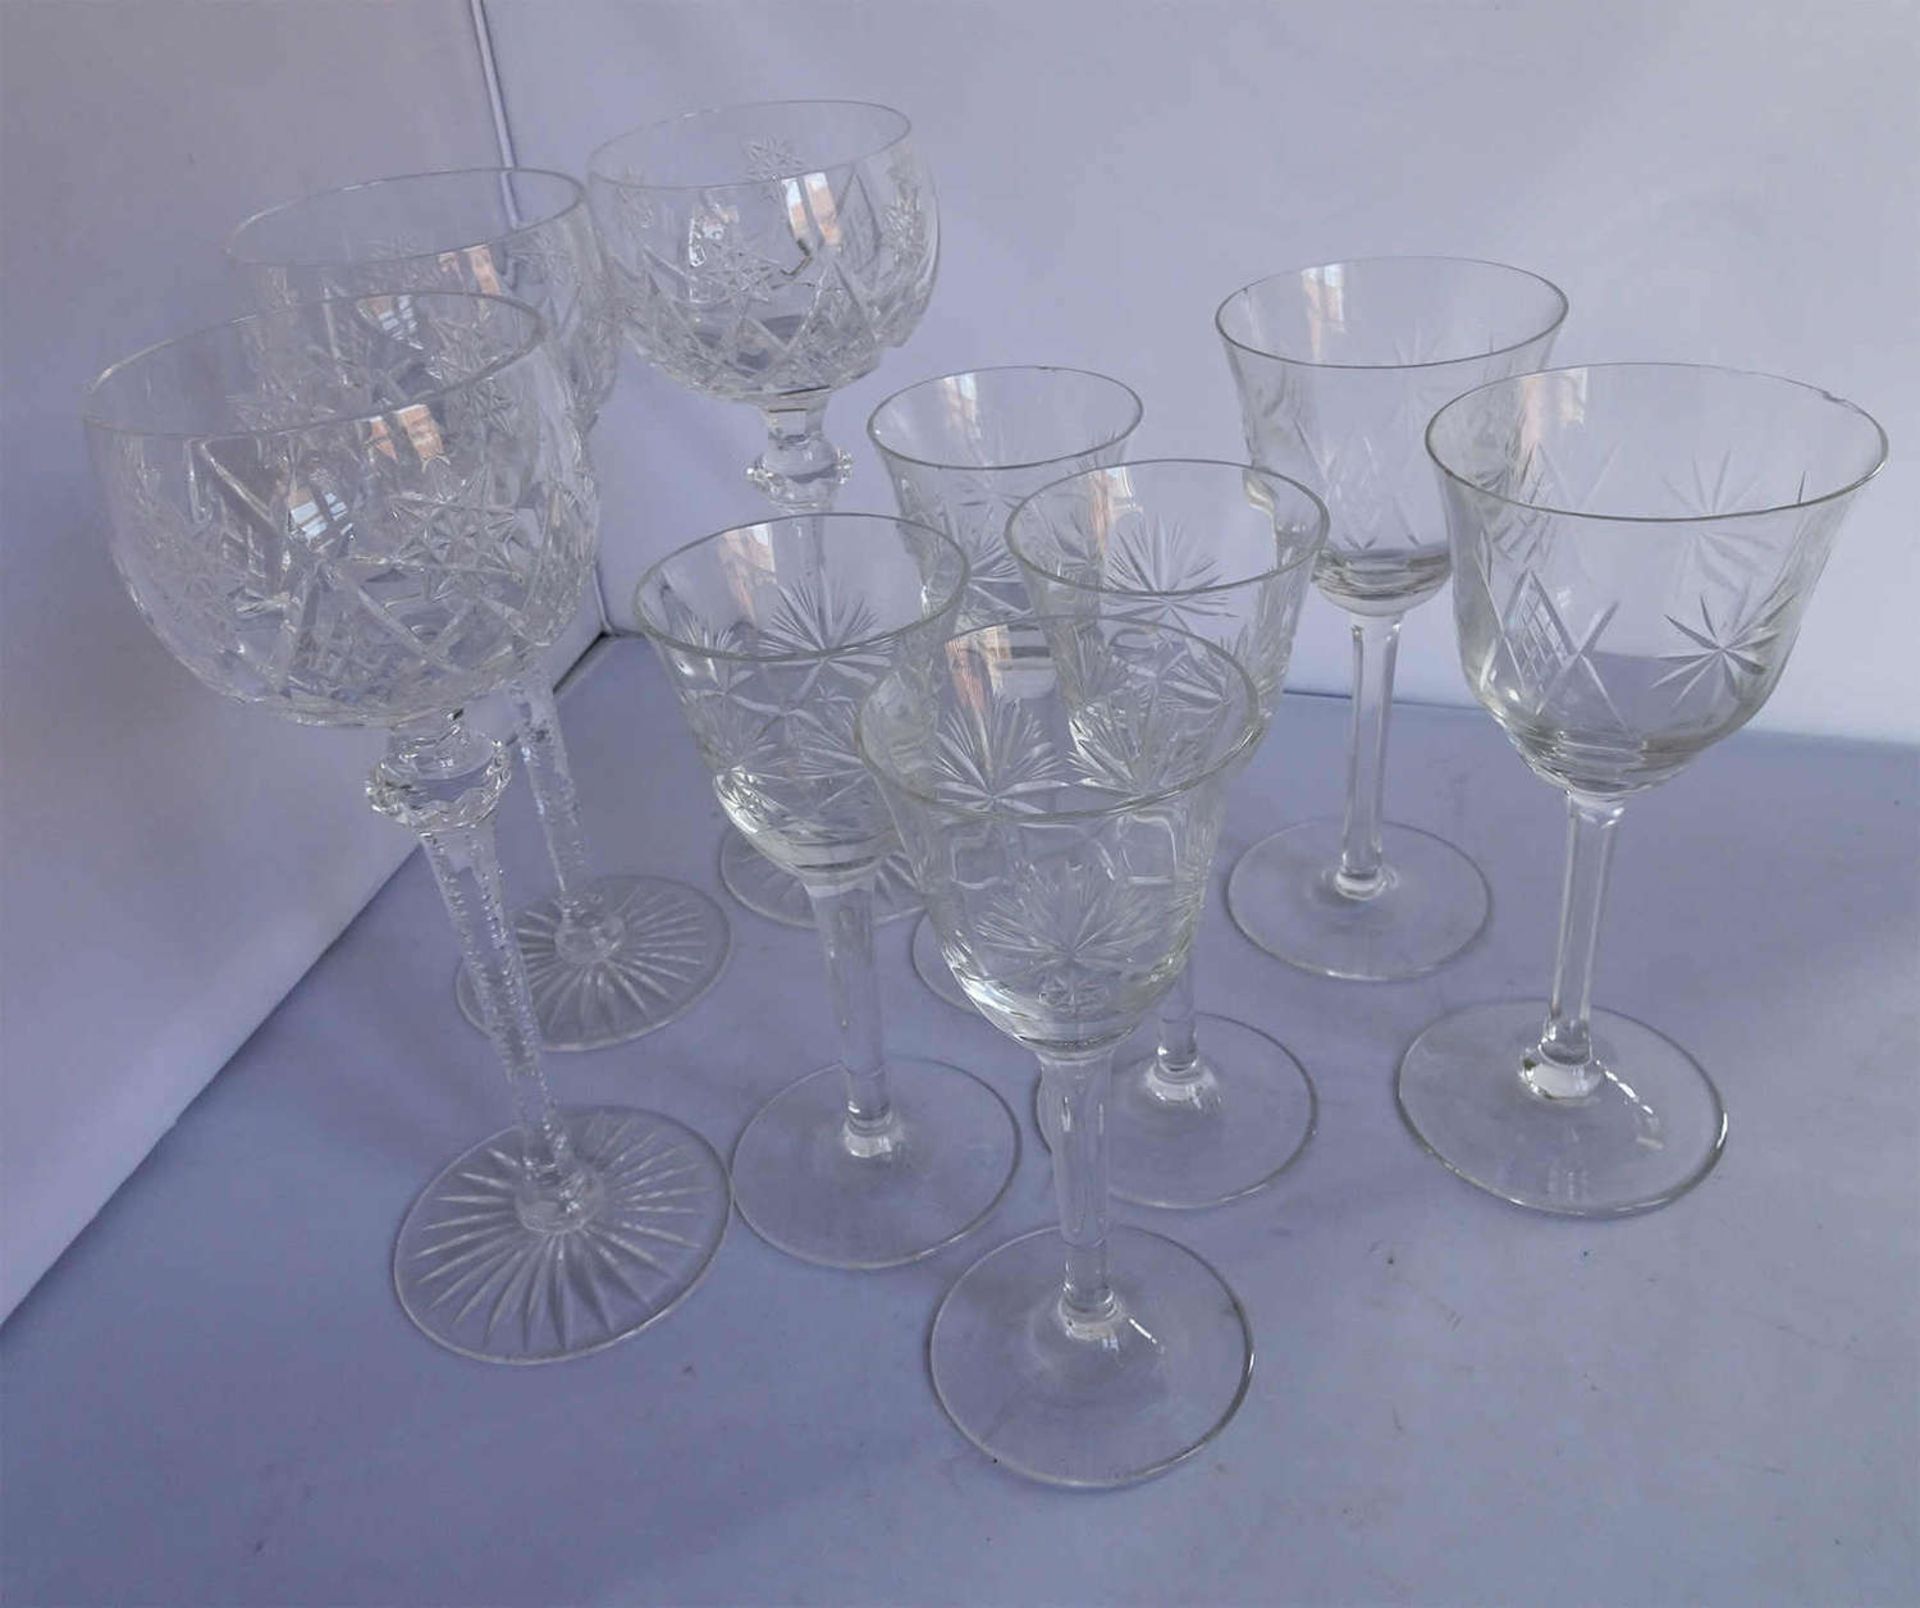 Lot Gläser aus Haushaltsauflösung, dabei 3 Weingläser aus Kristallglas, geschliffen, sowie 4